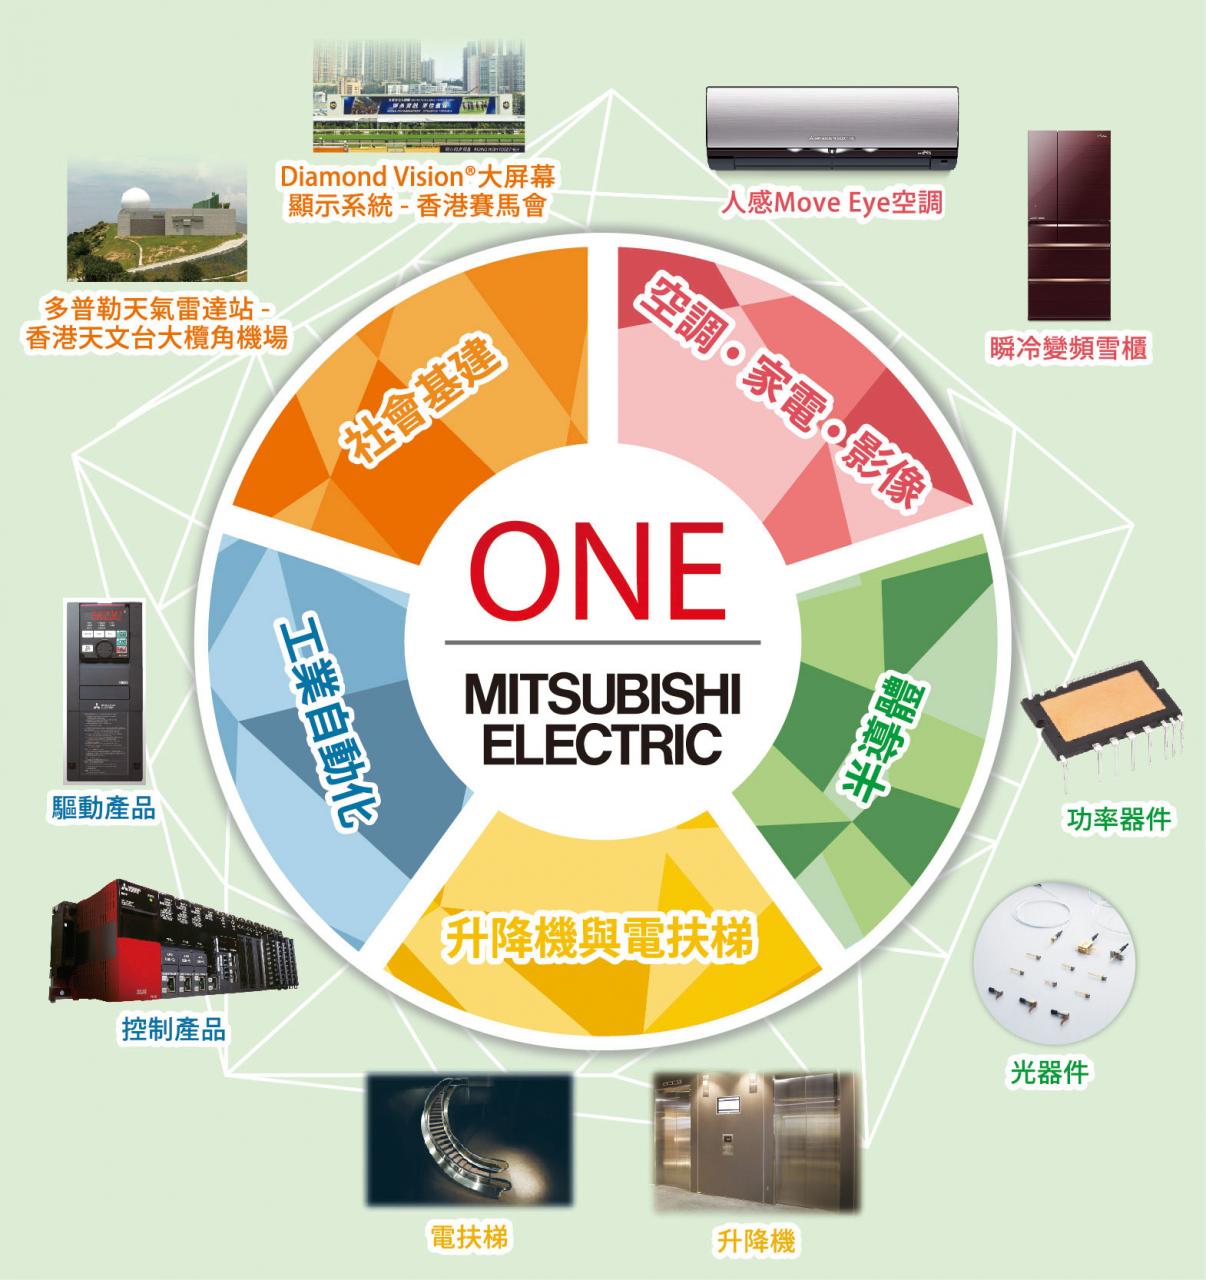 三菱電機（香港）業務範疇廣泛，覆蓋家居、商業及基建設施層面。